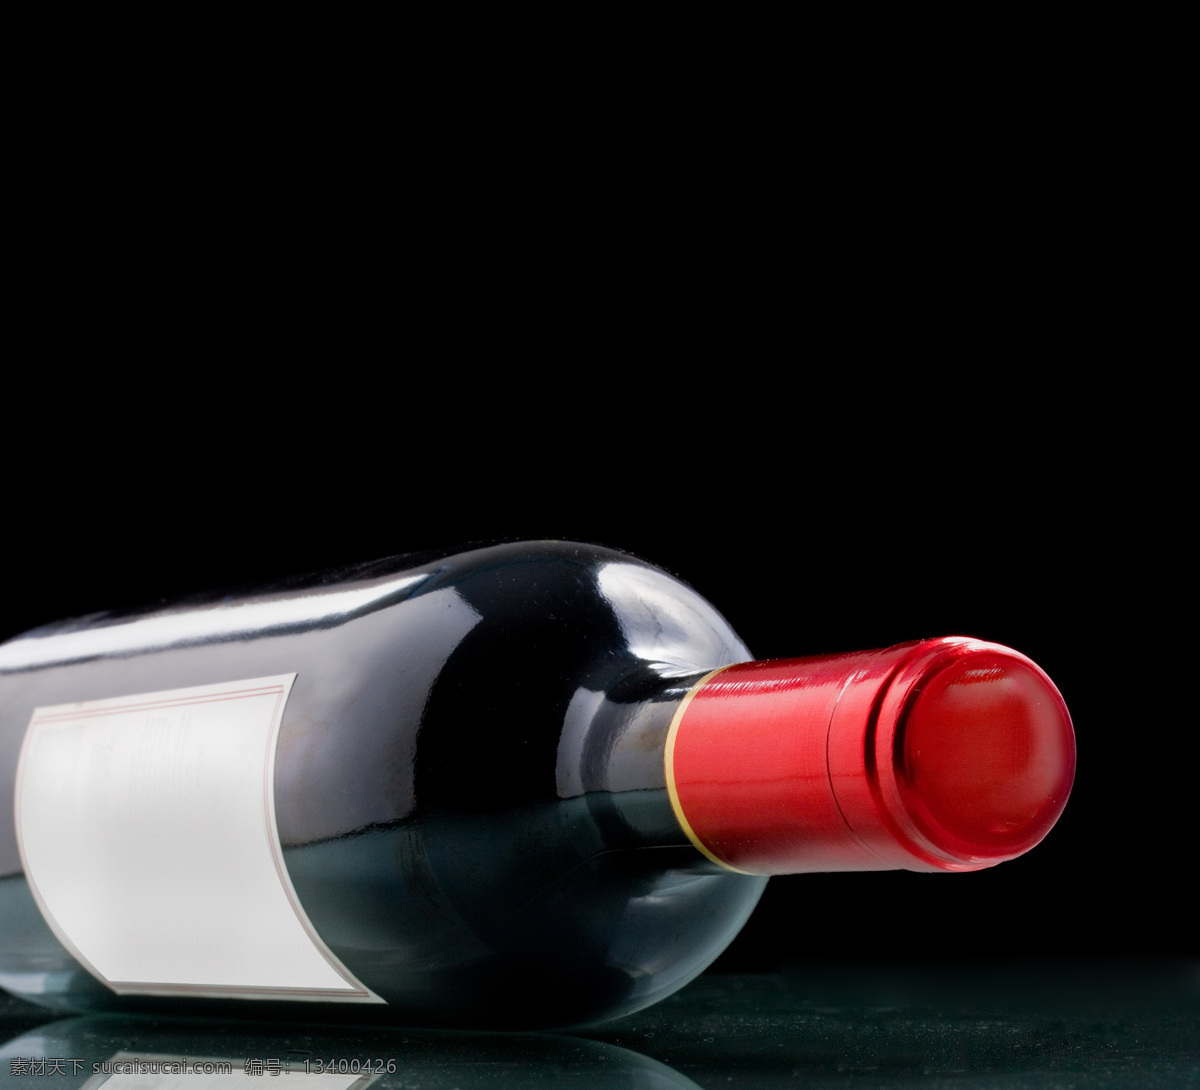 倒 葡萄 酒瓶 葡萄酒 红酒 葡萄酒瓶 倒着的酒瓶 高清摄影 美食美酒 酒类图片 餐饮美食